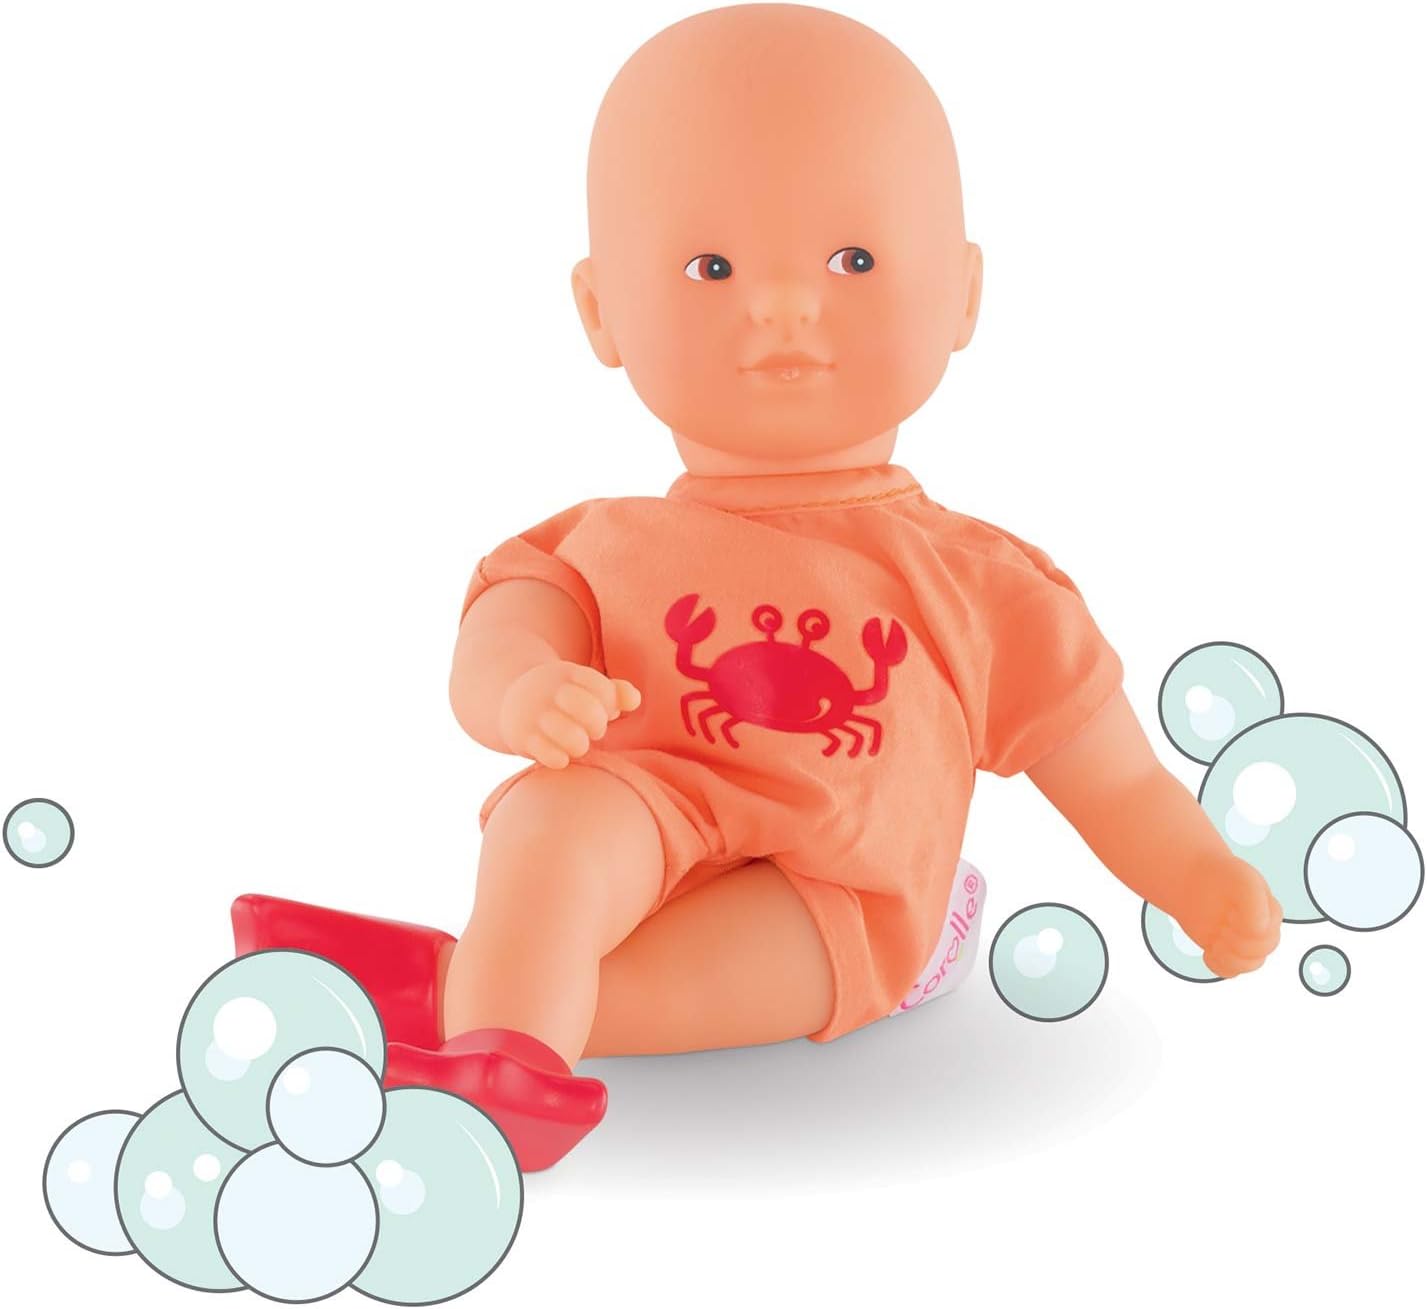 コロール 赤ちゃん 人形 ベビー人形 【送料無料】Corolle Mon Premier Poupon Mini Bath Orange Toy  Baby Dollコロール 赤ちゃん 人形 ベビー人形 | angelica